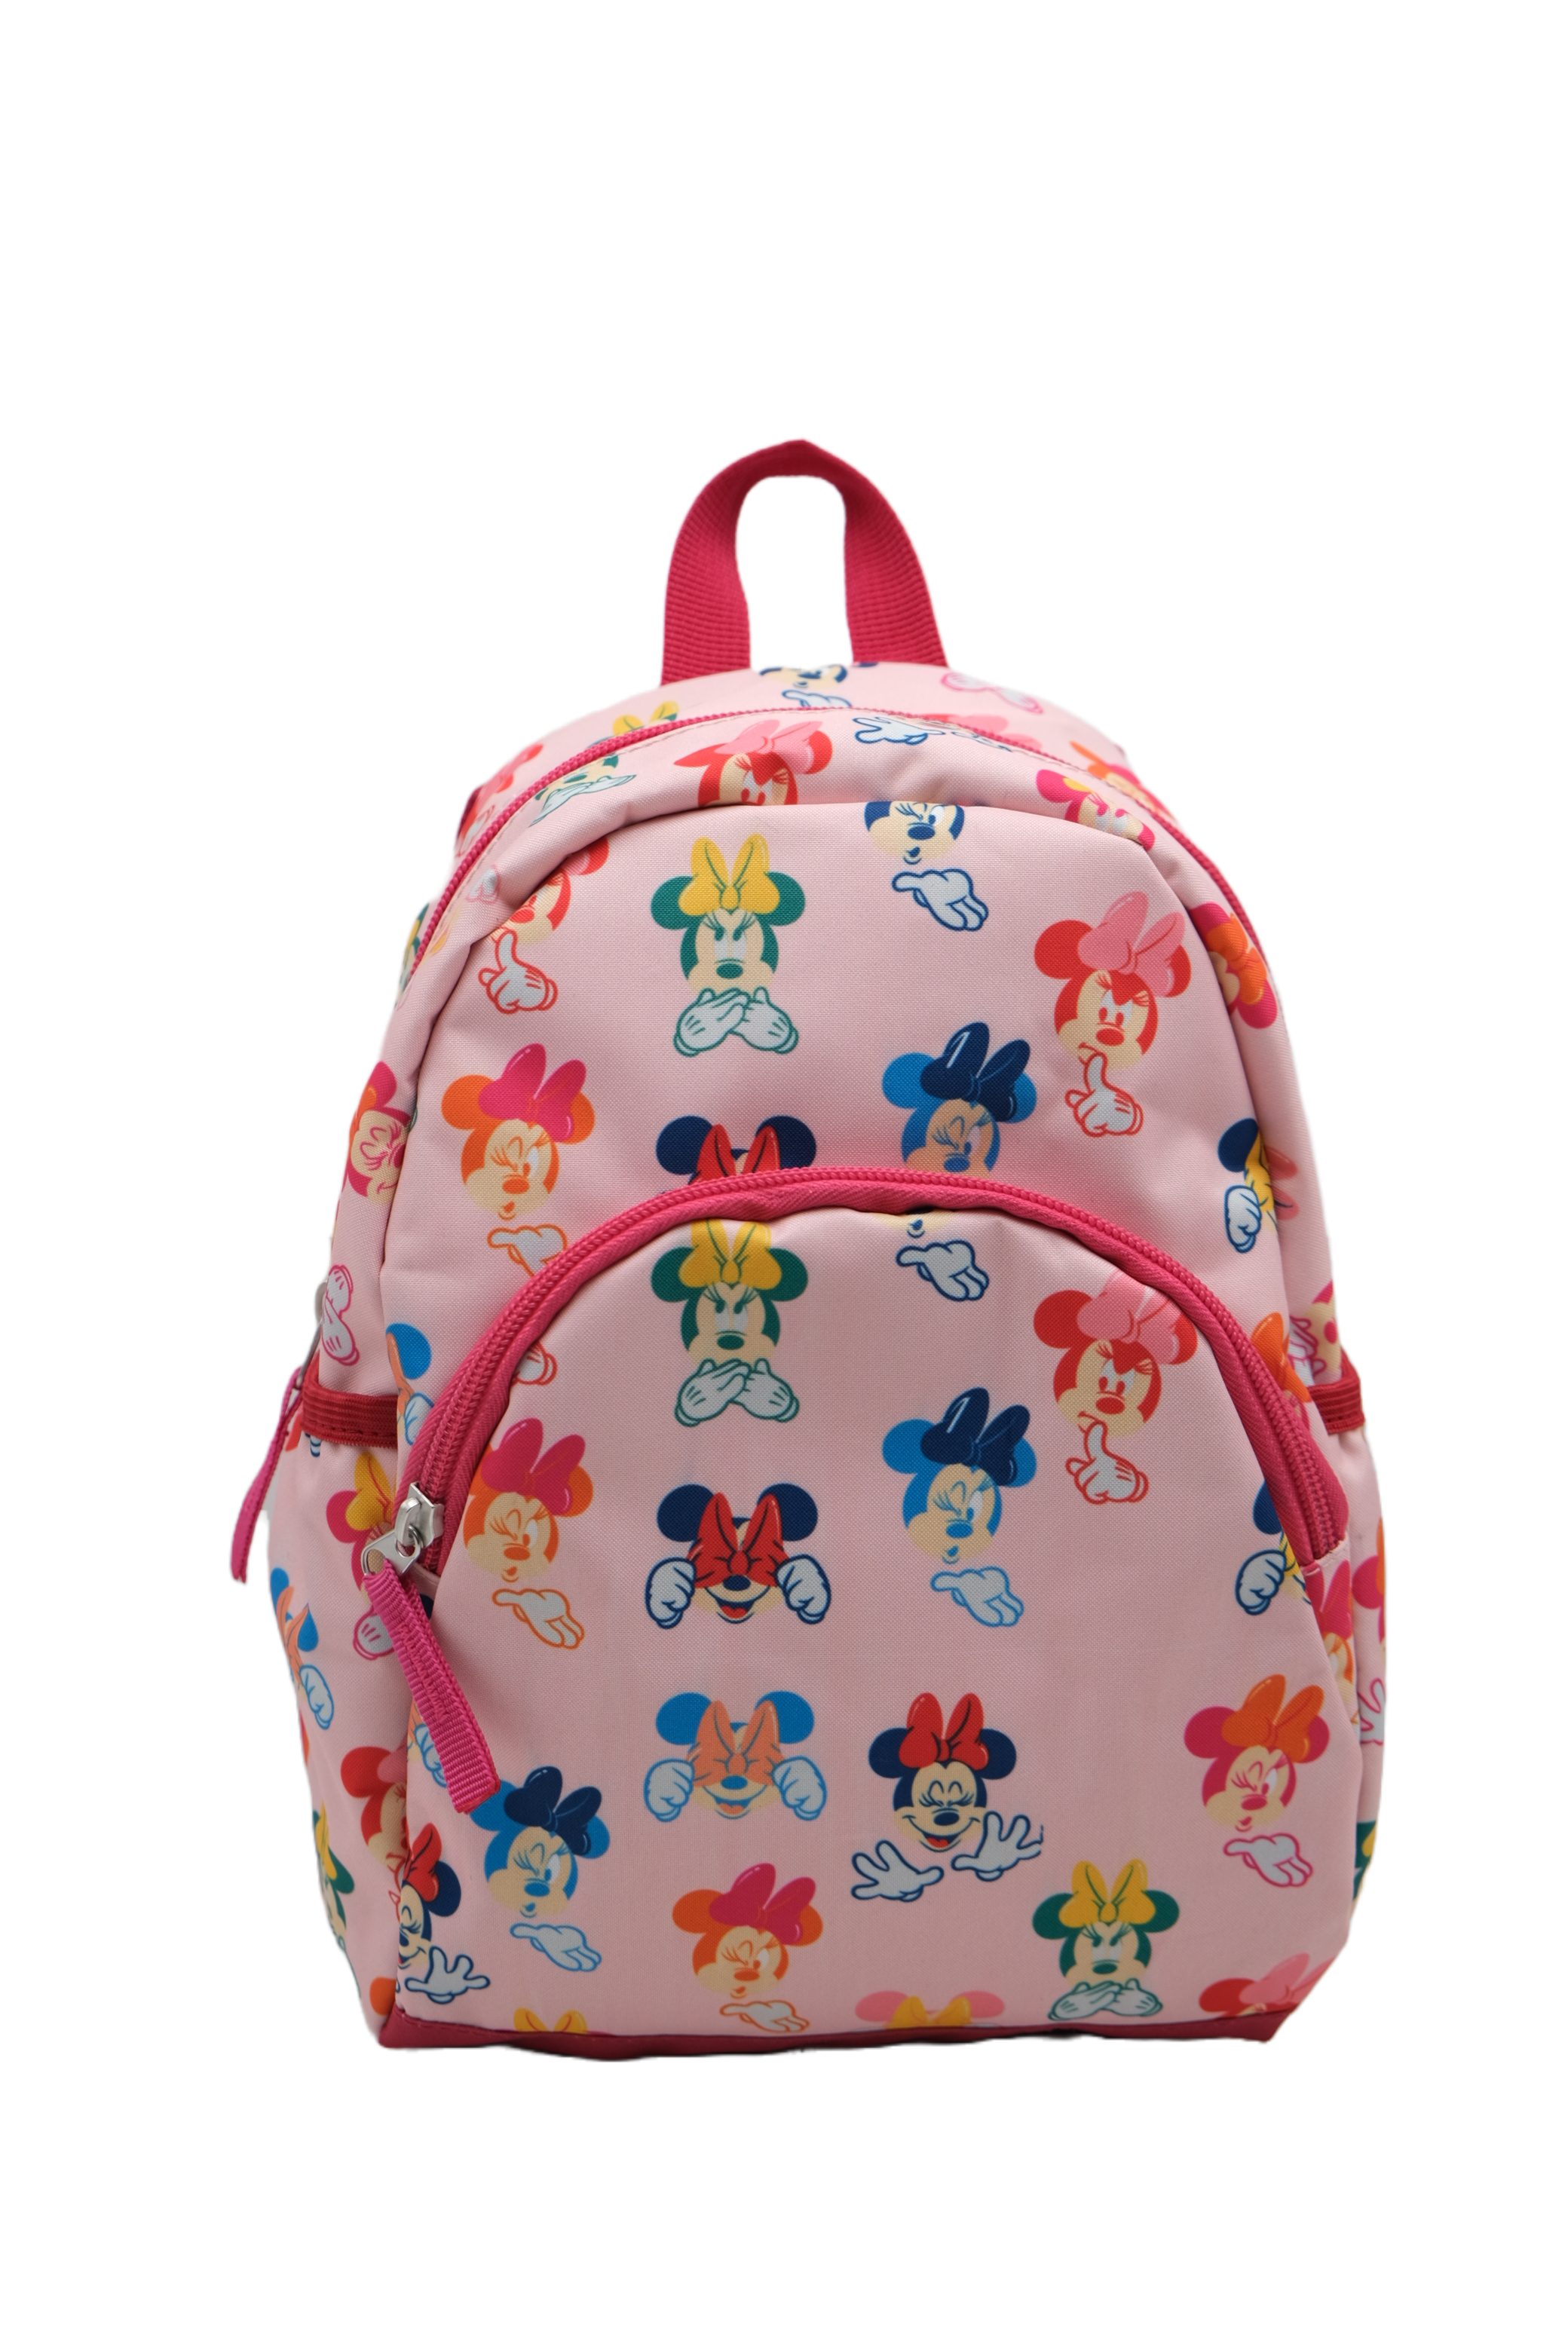 Disney Minnie Mouse Kinderrucksack Freizeit-Tasche Kindergartentasche Pink Backpack 30cm